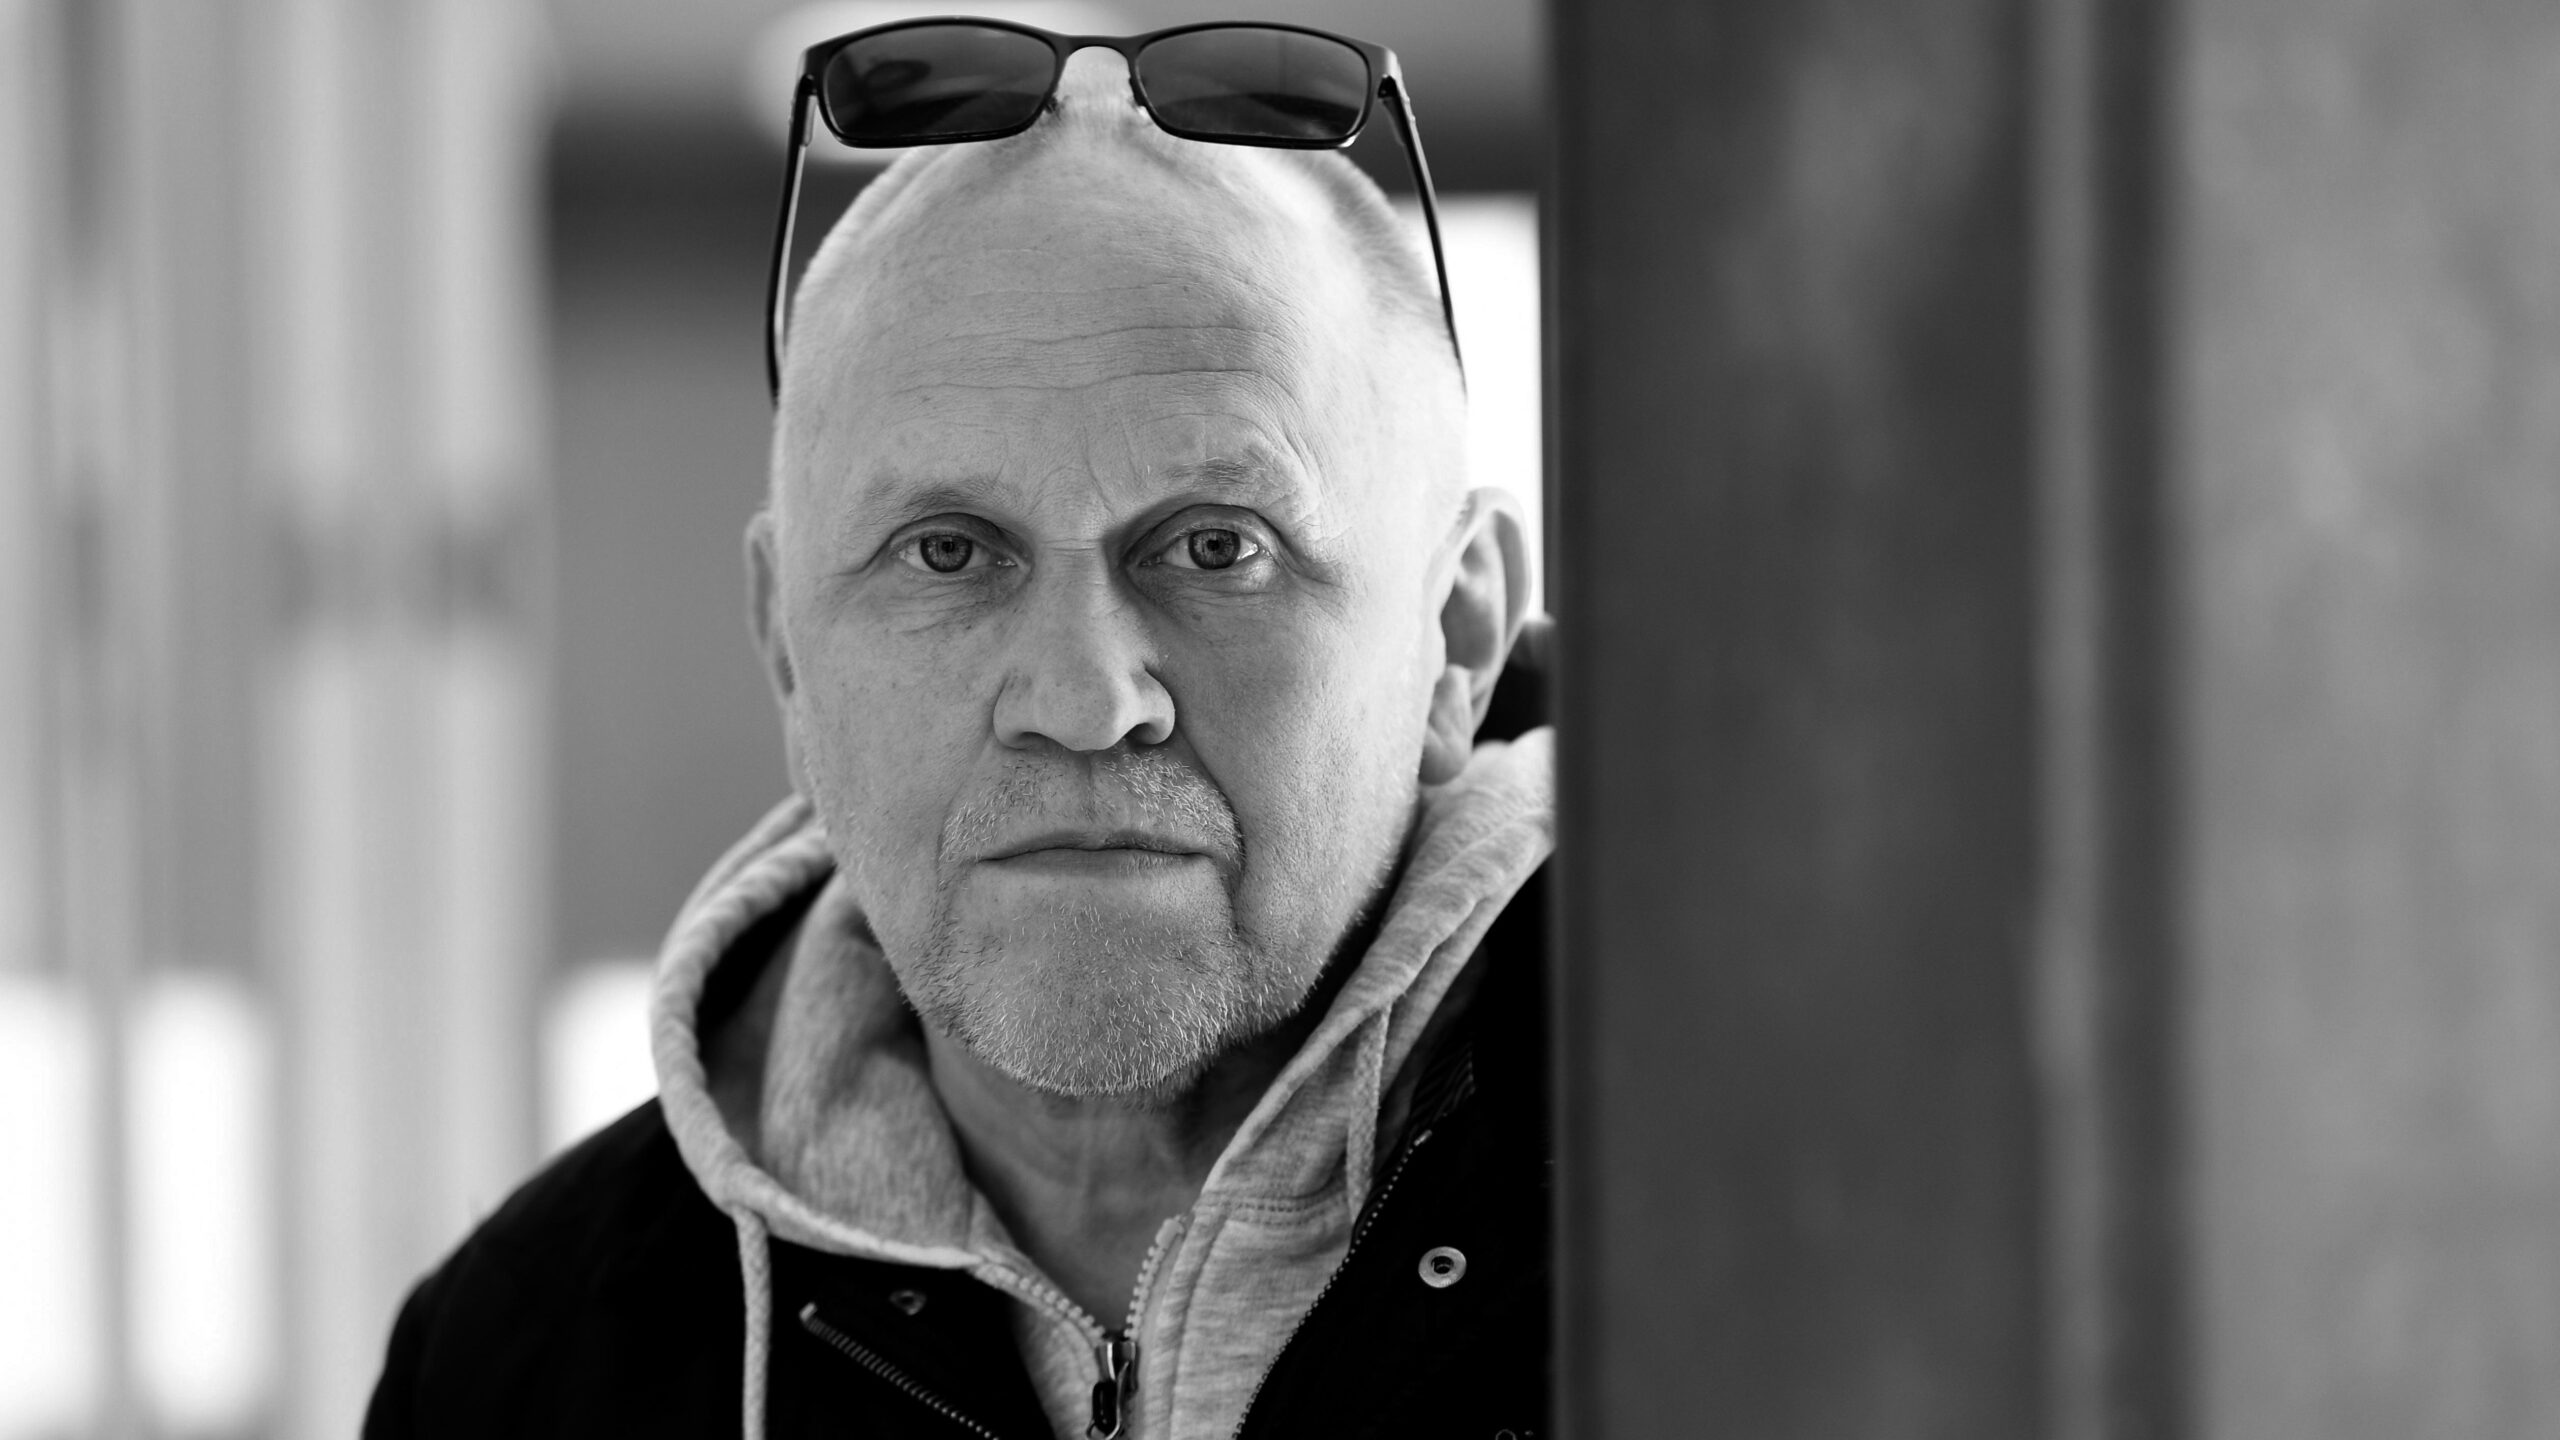 Jyväskylän yliopiston opettaja, entinen sotilastiedustelun apulaispäällikkö Martti J. Kari menehtyi 62-vuotiaana.